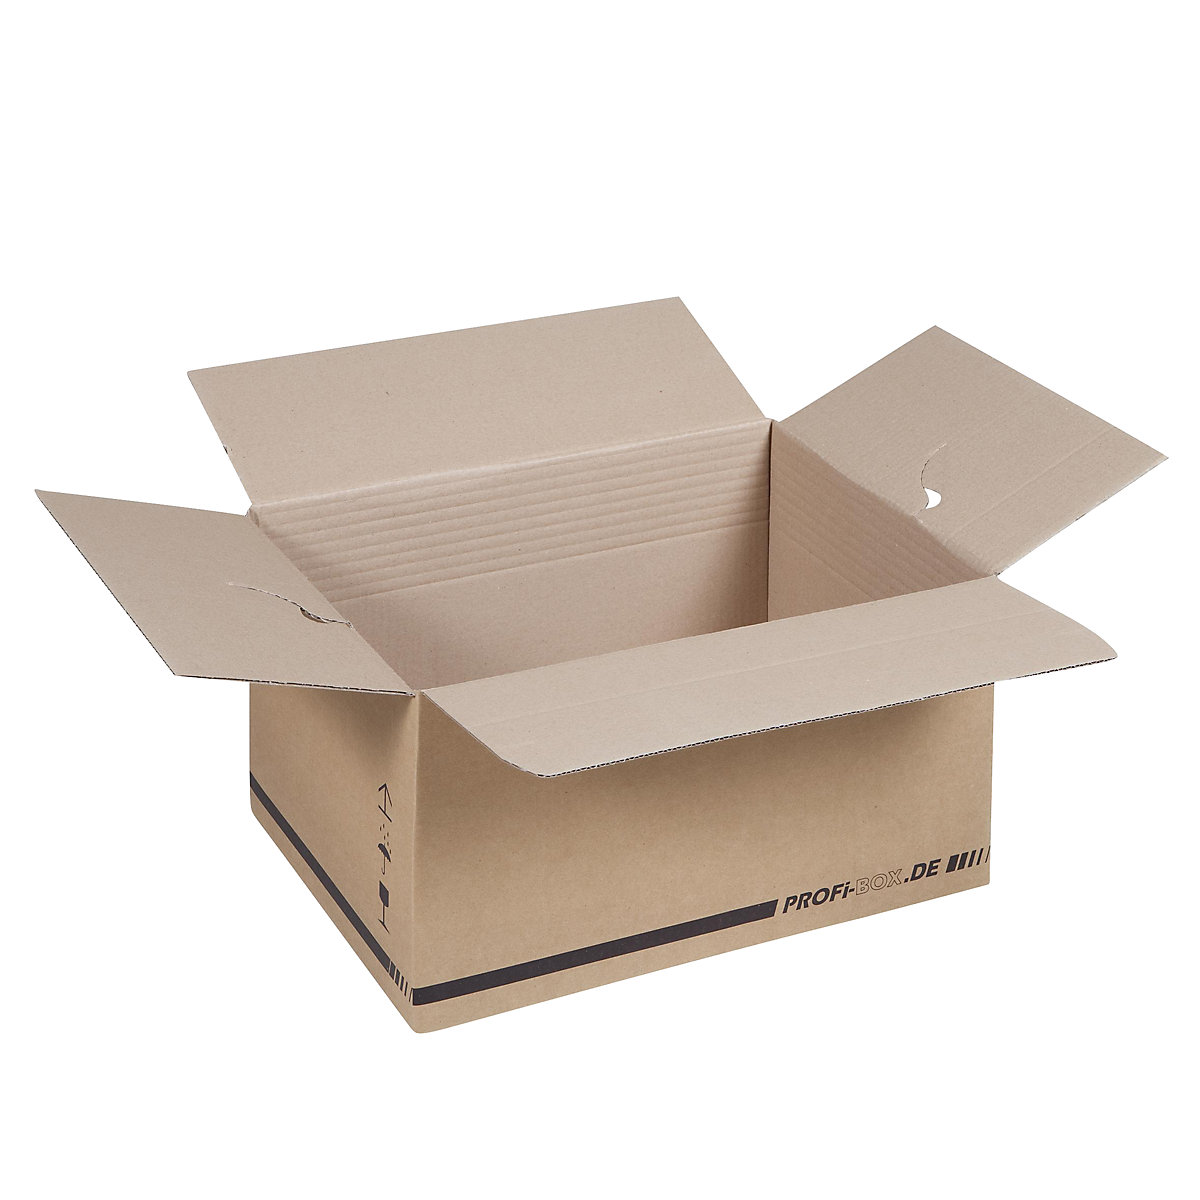 Caixas profissionais, em papelão simples, FEFCO 0701, dimensões interiores 445 x 315 x 235 mm, embalagem de 50 unid.-2